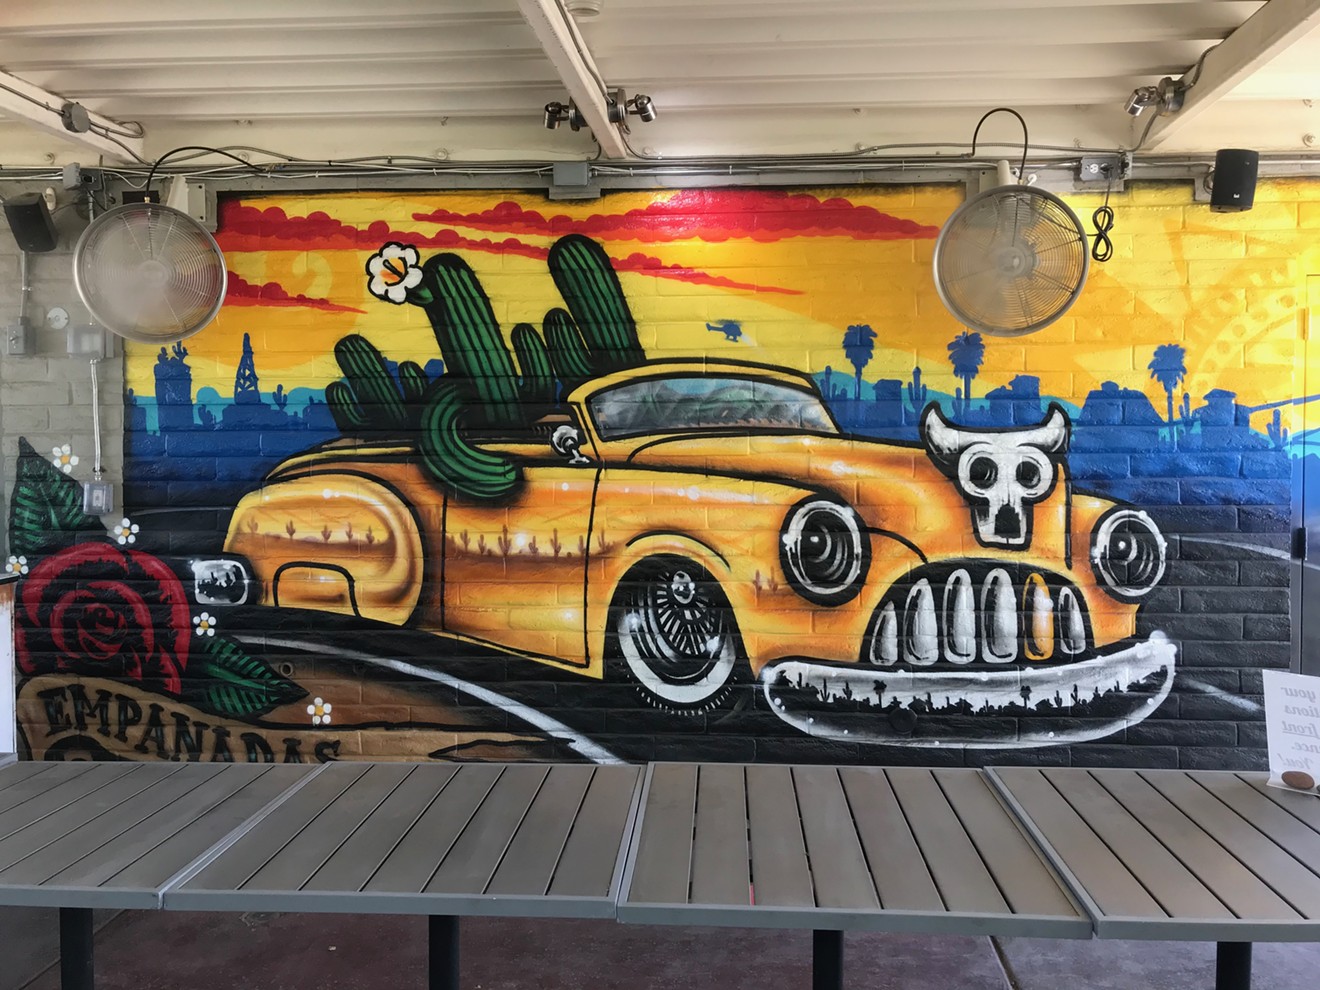 Lalo Cota mural sighting at Republica Empanada in Mesa.